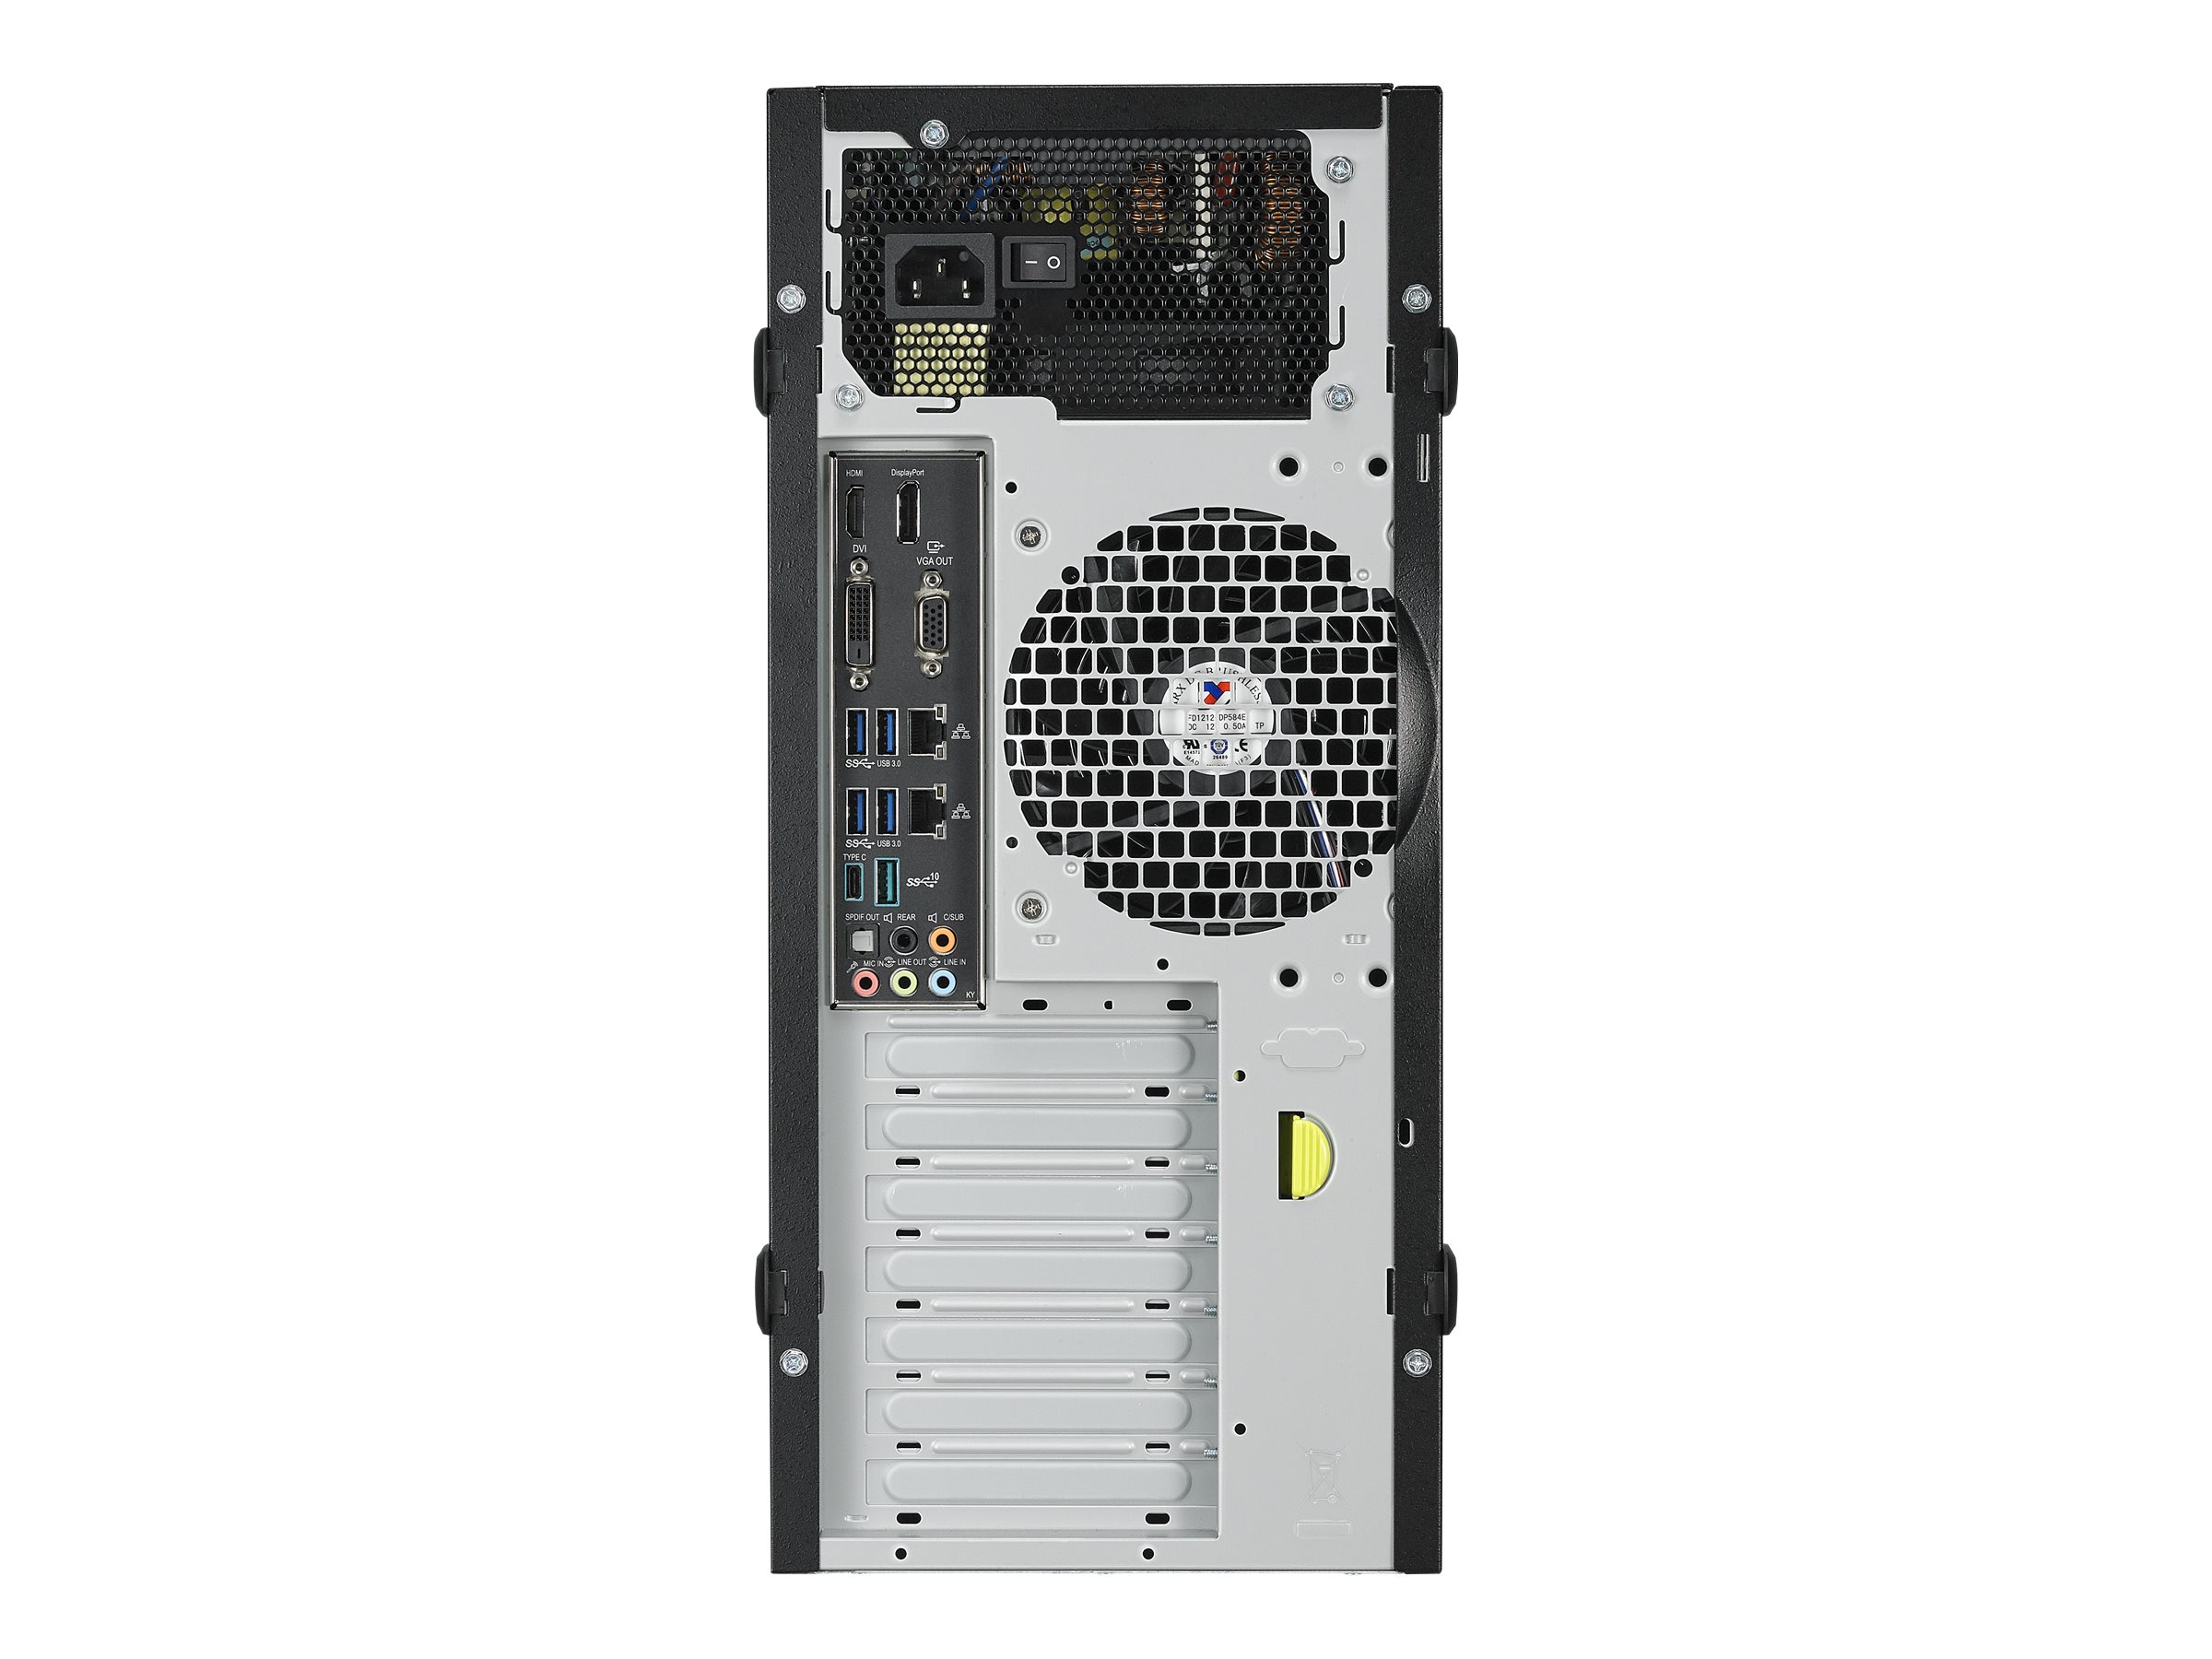 ASUS E500 G5-M3240 - Tour - 1 x Xeon E-2124G / 3.4 GHz - RAM 8 Go - HDD 1 To - graveur de DVD - Quadro P2000 - Gigabit Ethernet - Windows 10 Pro pour Stations de travail - moniteur : aucun - 90SF00Q1-M03240 - Ordinateurs de bureau